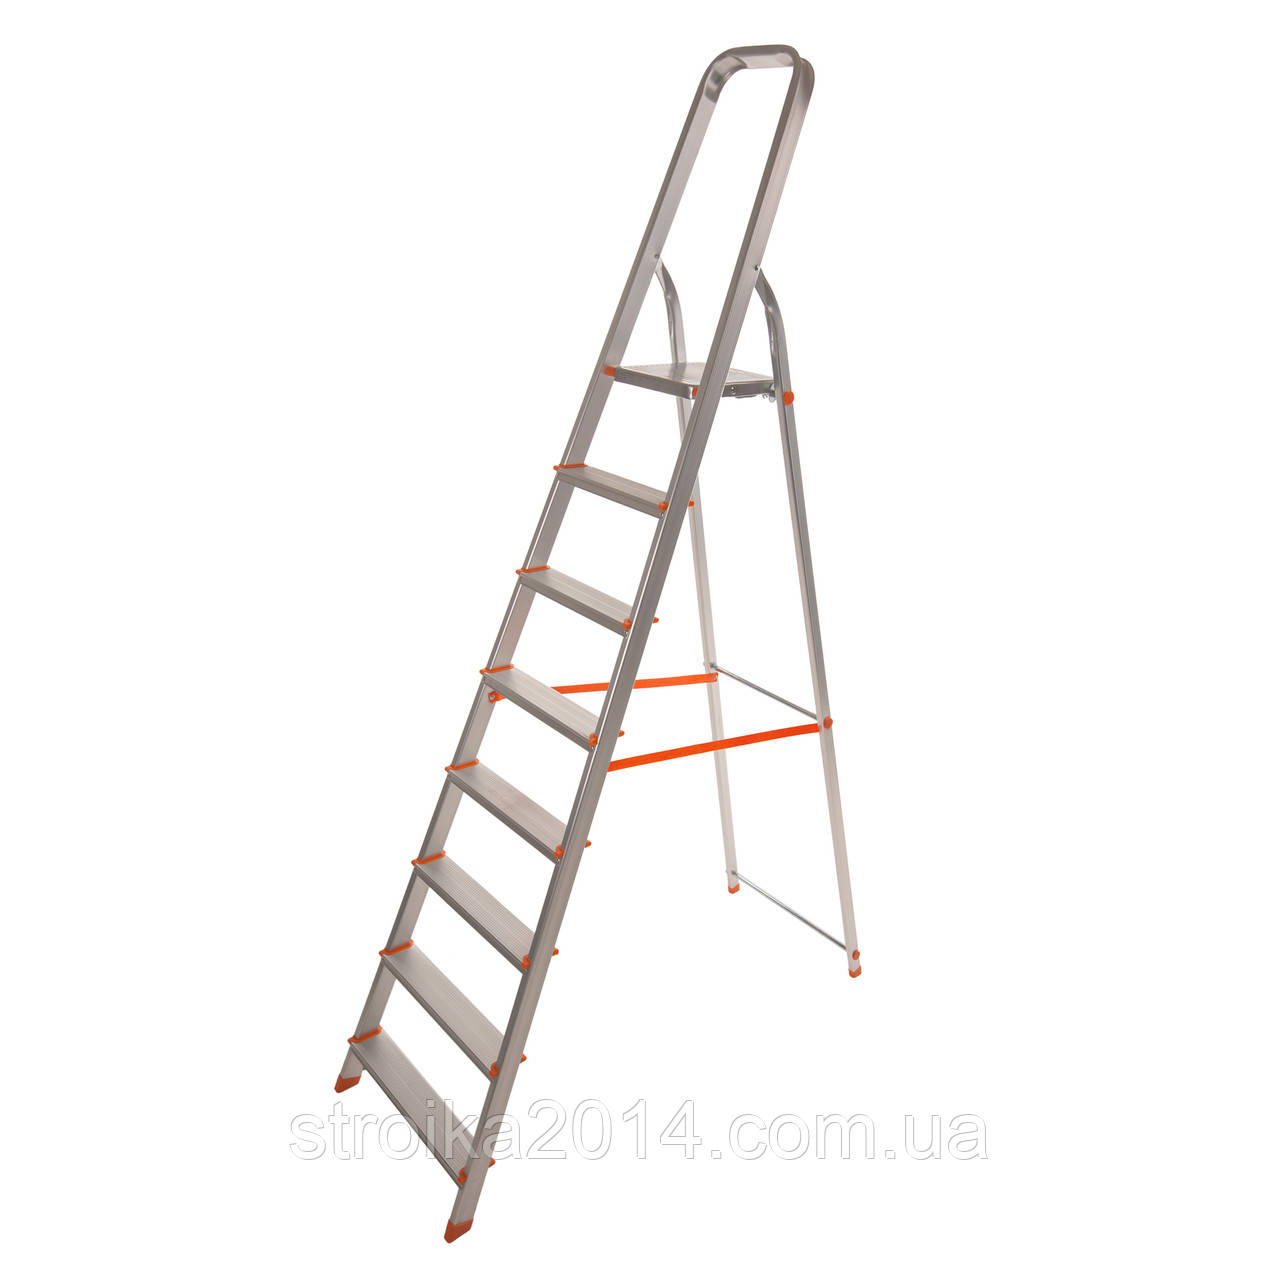 Стрем'янка алюмінієва 2.25 м. 8 сходинок Laddermaster "Alcor" (A1A8)